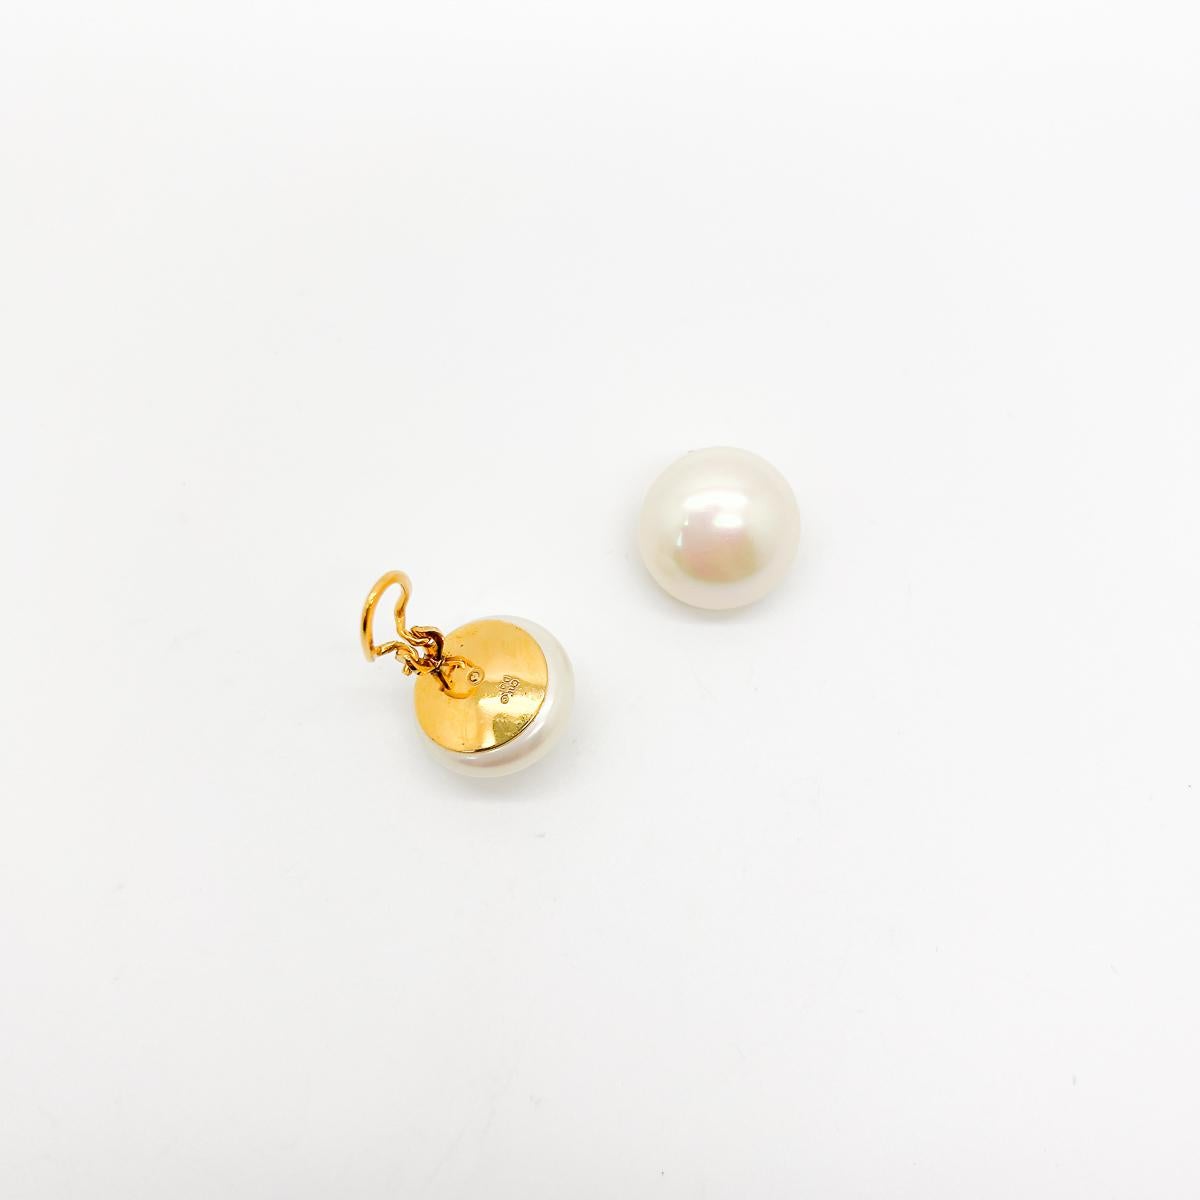 Une paire de boucles d'oreilles en perles Vintage Dior. L'incarnation du style chic.
Avec des pièces d'archives de sa propre collection Dior exposées dans l'exposition Dior Designer of Dreams à Londres, Jennifer sait ce que c'est que de partir à la